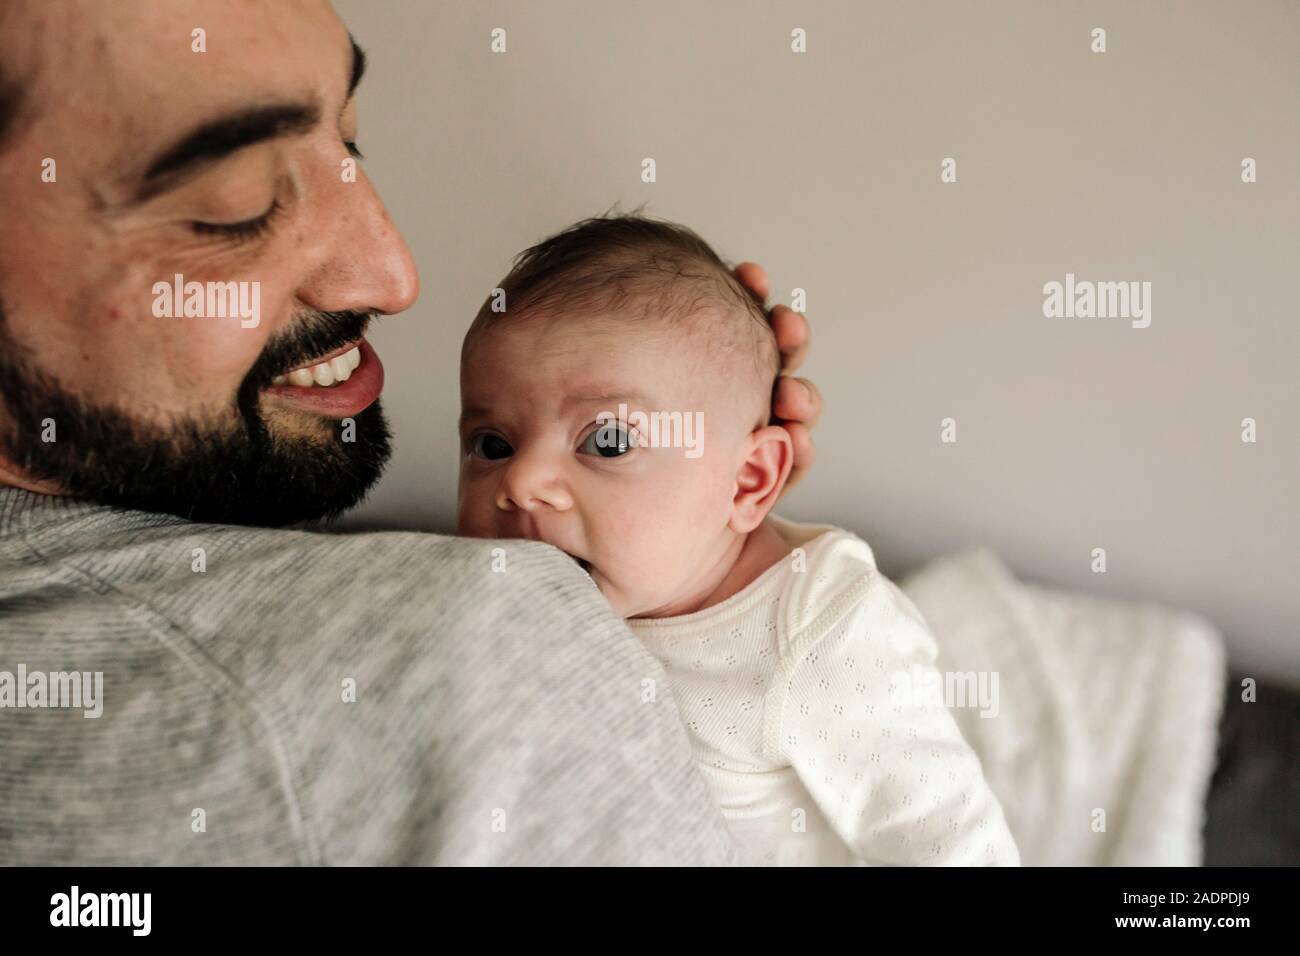 Heureux papa avec barbe et beau sourire holding newborn baby Banque D'Images